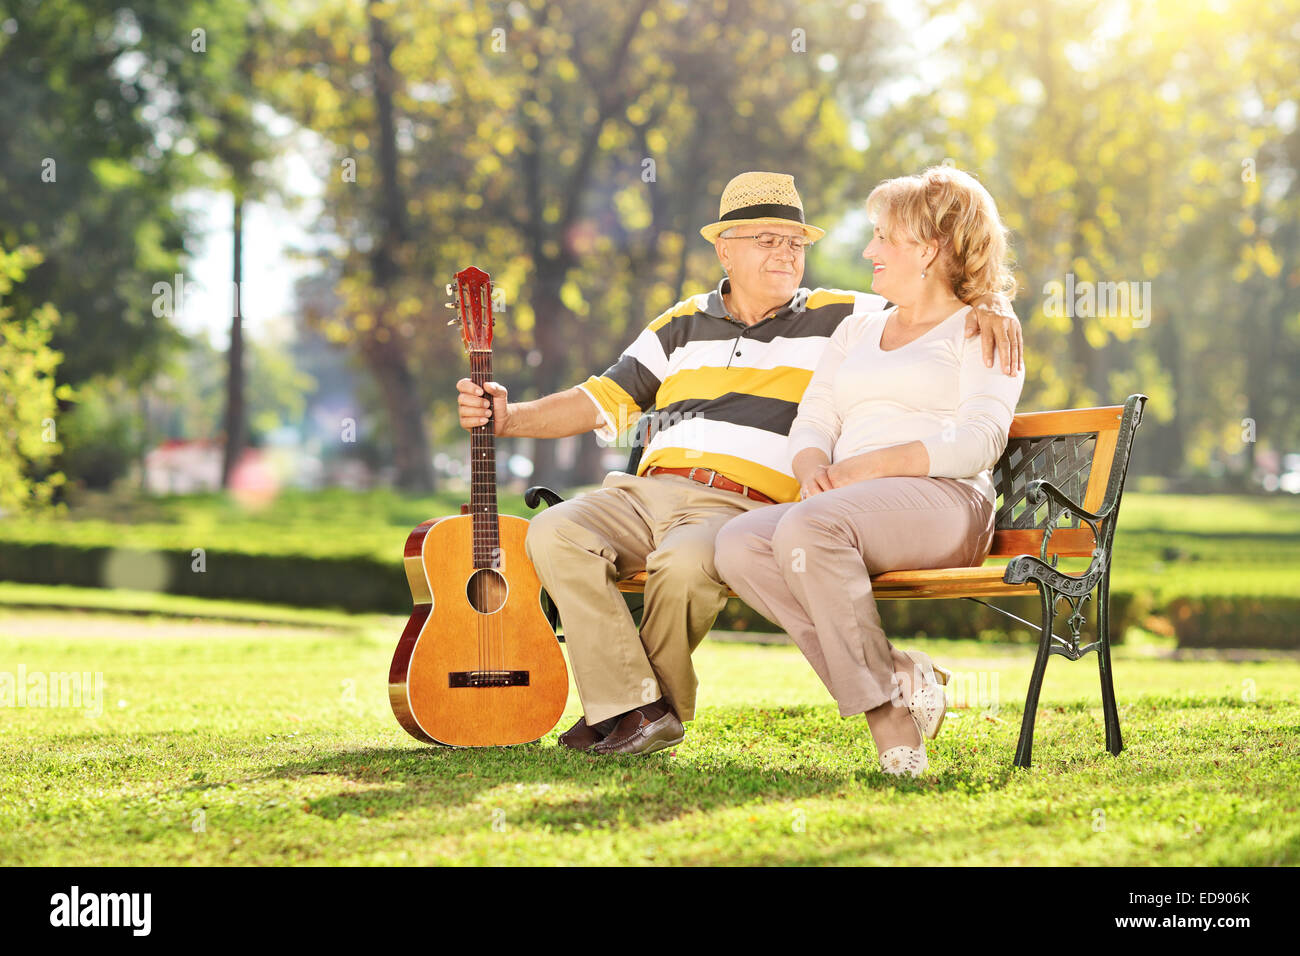 Reifer Mann mit seiner Frau im Park sitzen und halten eine Gitarre Stockfoto